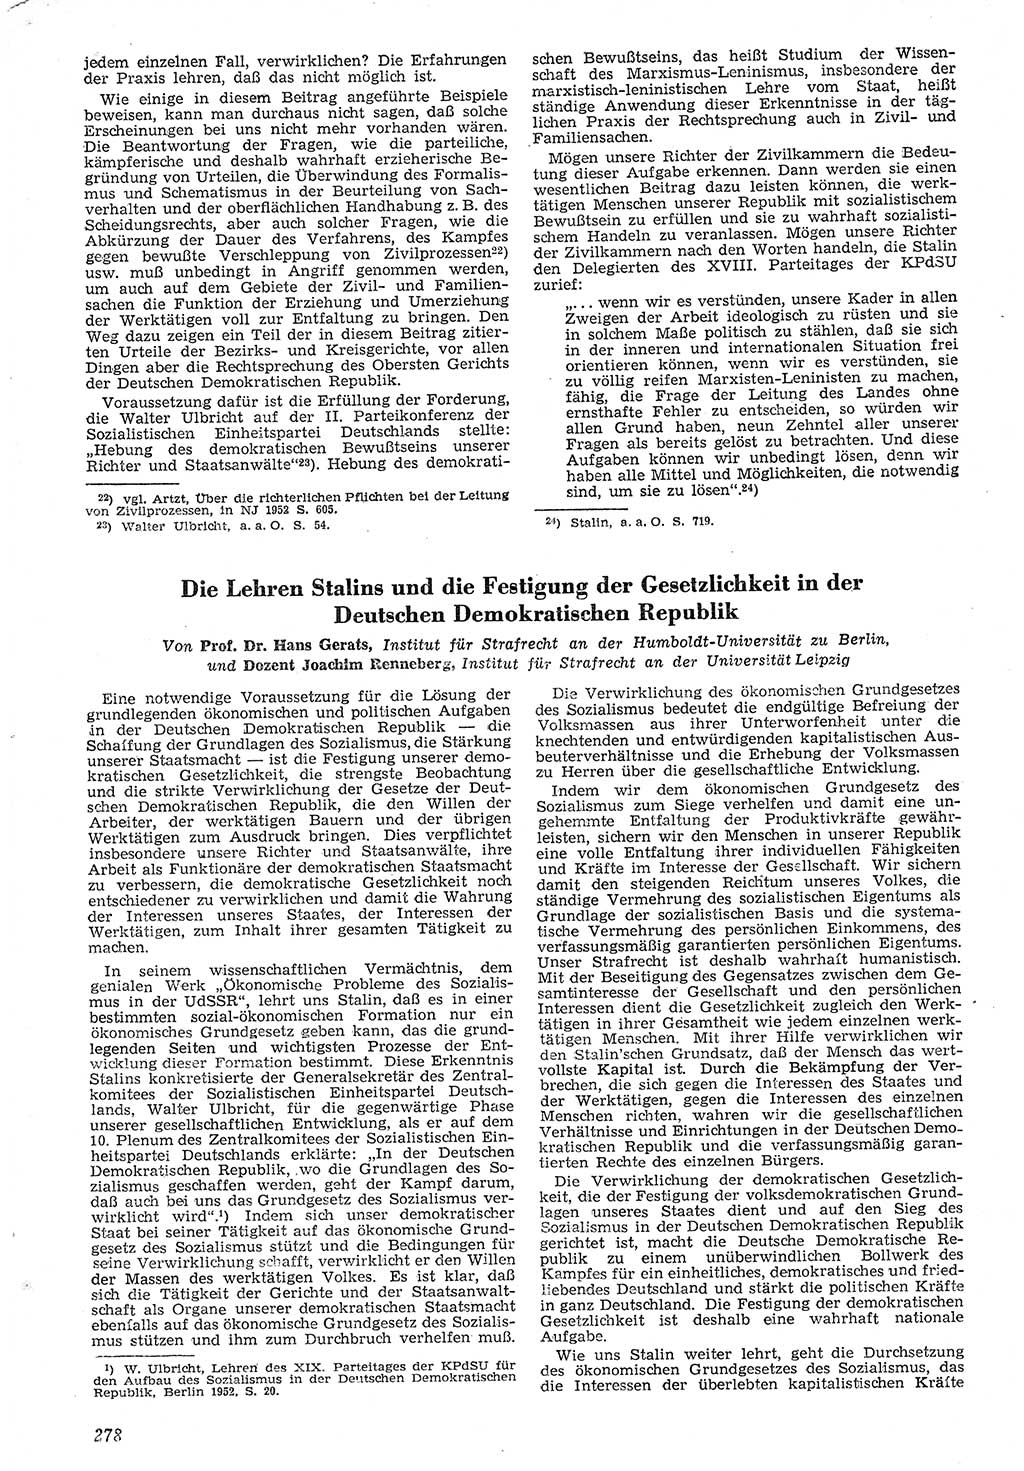 Neue Justiz (NJ), Zeitschrift für Recht und Rechtswissenschaft [Deutsche Demokratische Republik (DDR)], 7. Jahrgang 1953, Seite 278 (NJ DDR 1953, S. 278)